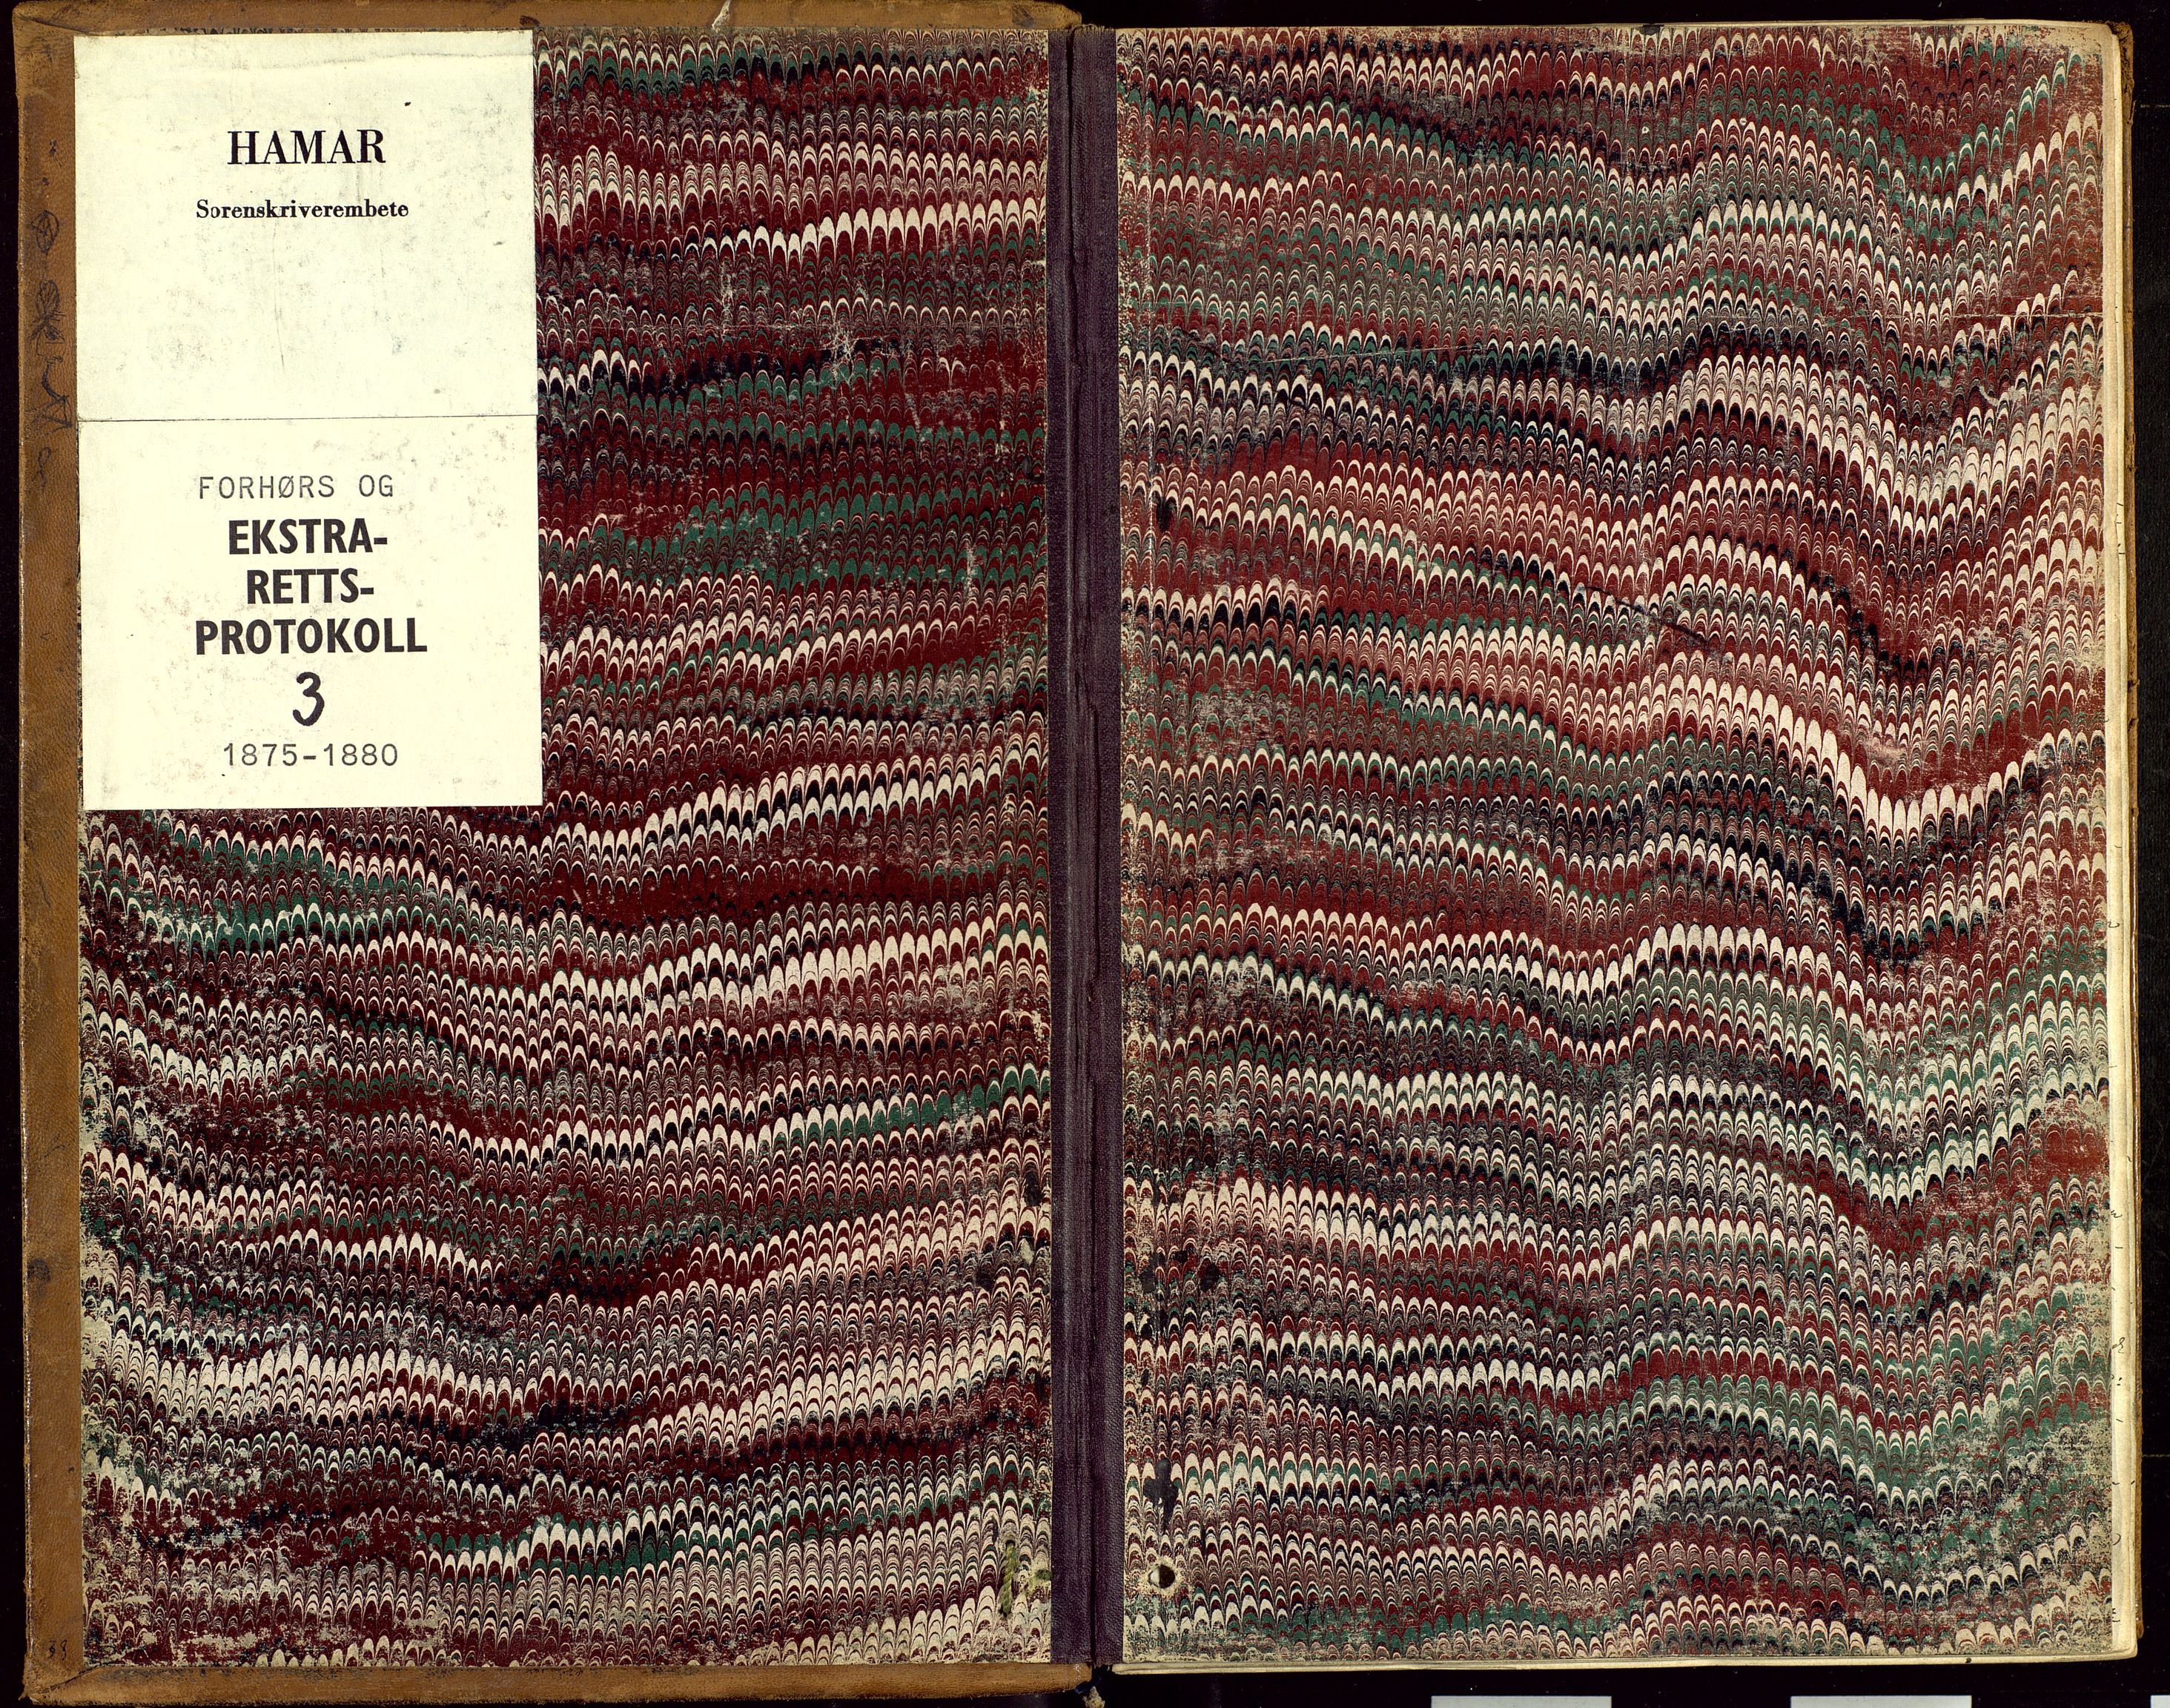 Hamar sorenskriveri, SAH/TING-030/G/Gc/L0003: Forhørs- og ekstrarettsprotokoll, 1875-1880